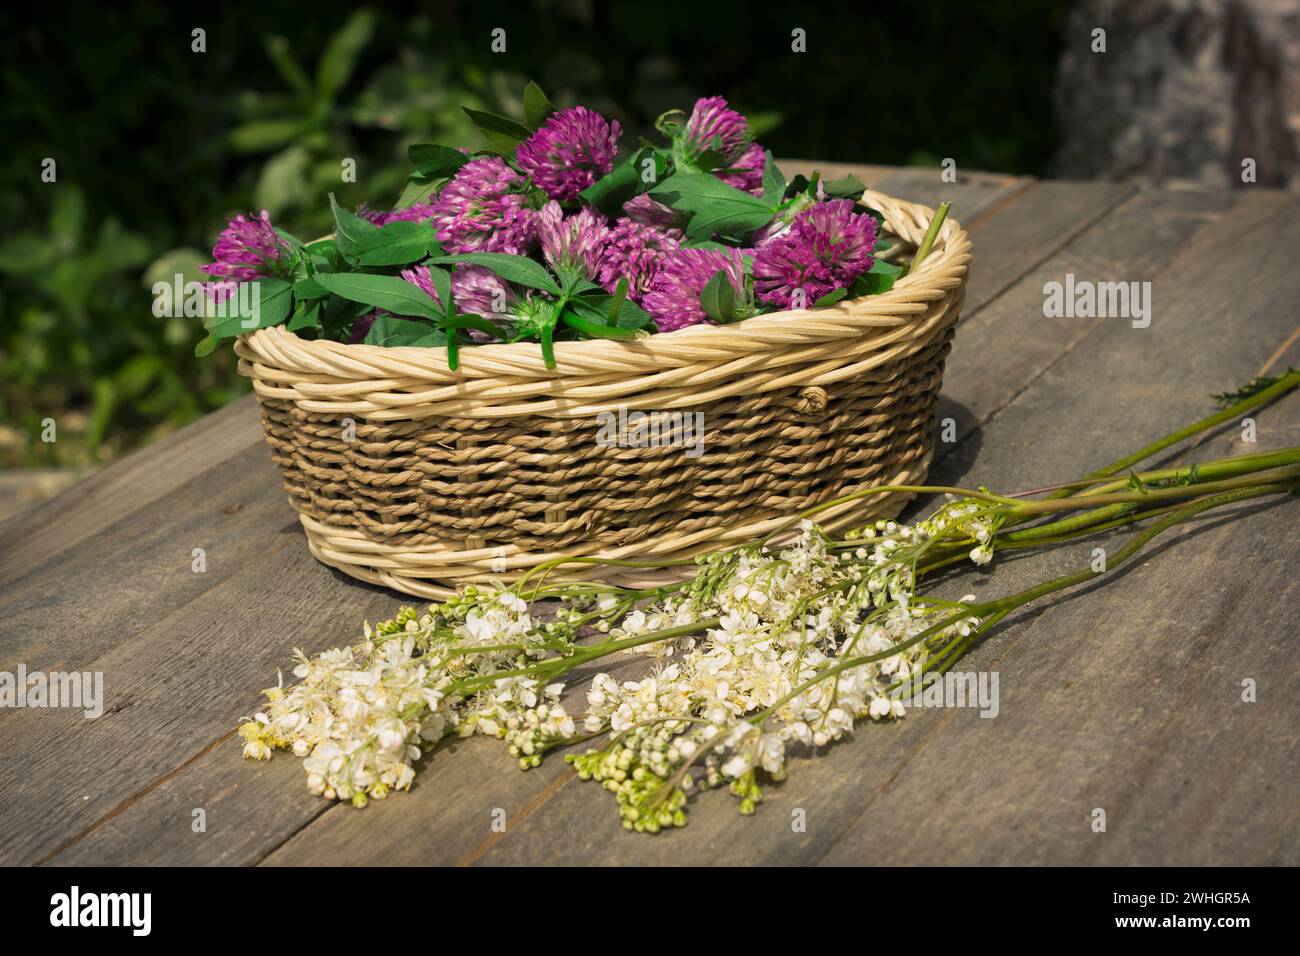 Ciotola di vimini piena di fiori di trifoglio e rami meadowsweet Foto Stock